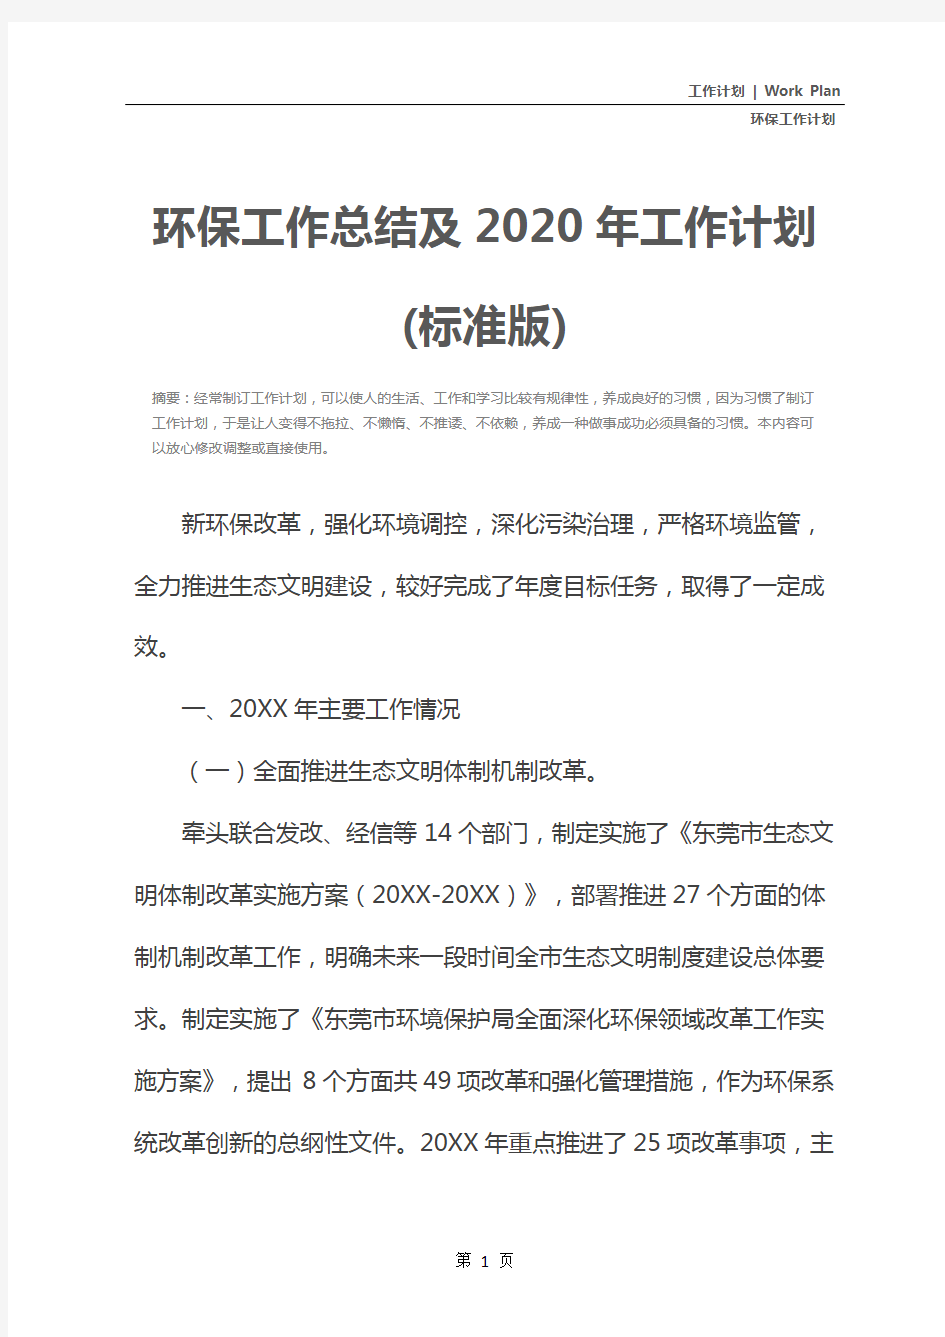 环保工作总结及2020年工作计划(标准版)